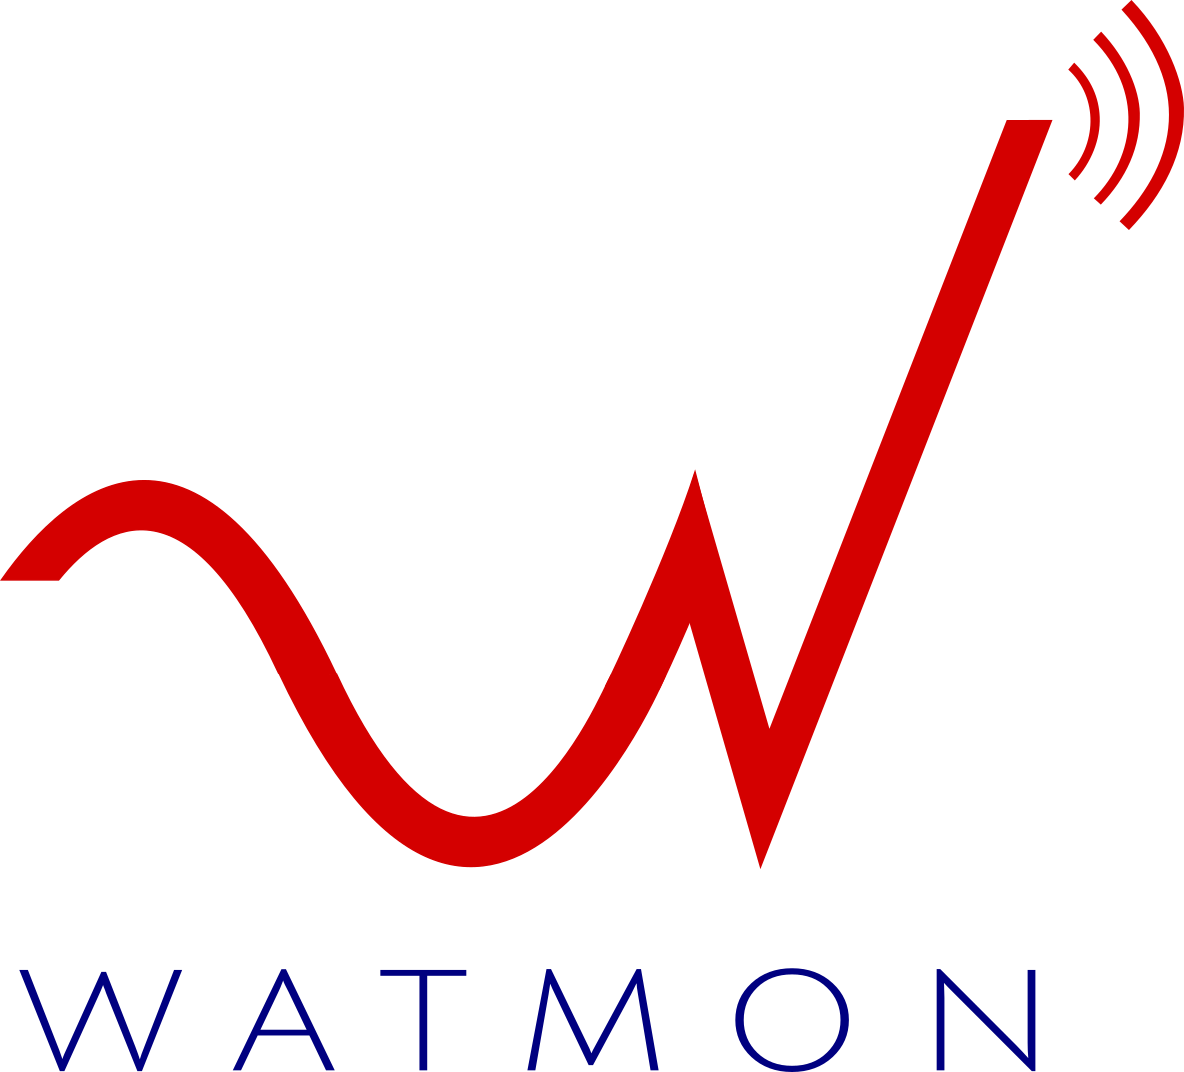 Wireless Access and Data Traffic Monitoring (WATMON)